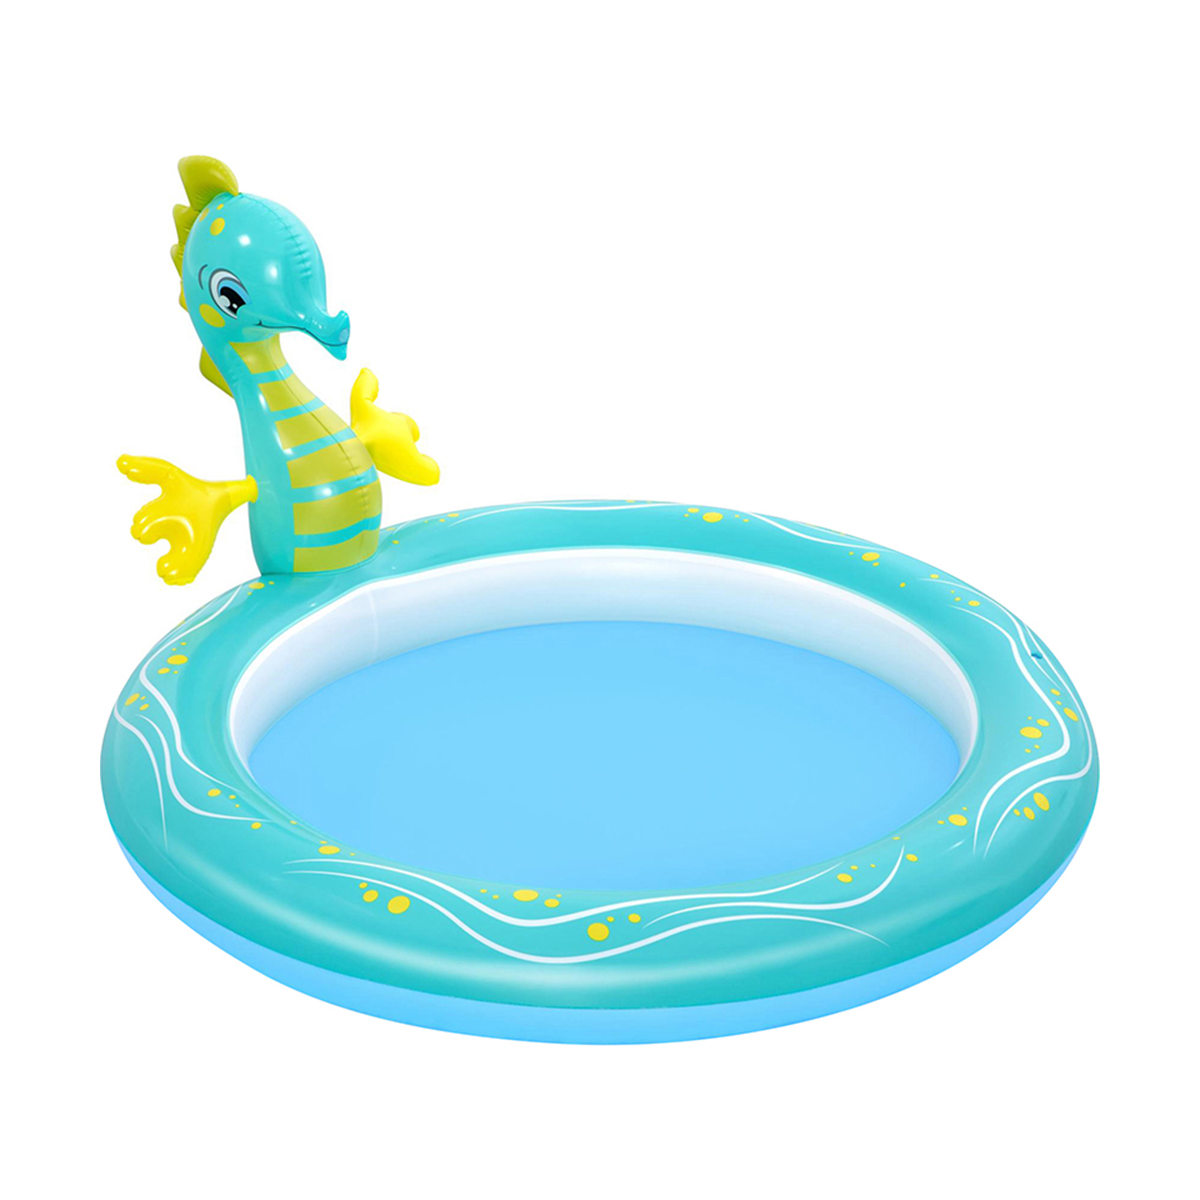 Бассейн надувной детский Bestway Seahorse, с разбрызгивателем, 188 x 160 x 86 см, 140 л бассейн bestway термометр игрушка для измерения температуры воды в бассейне